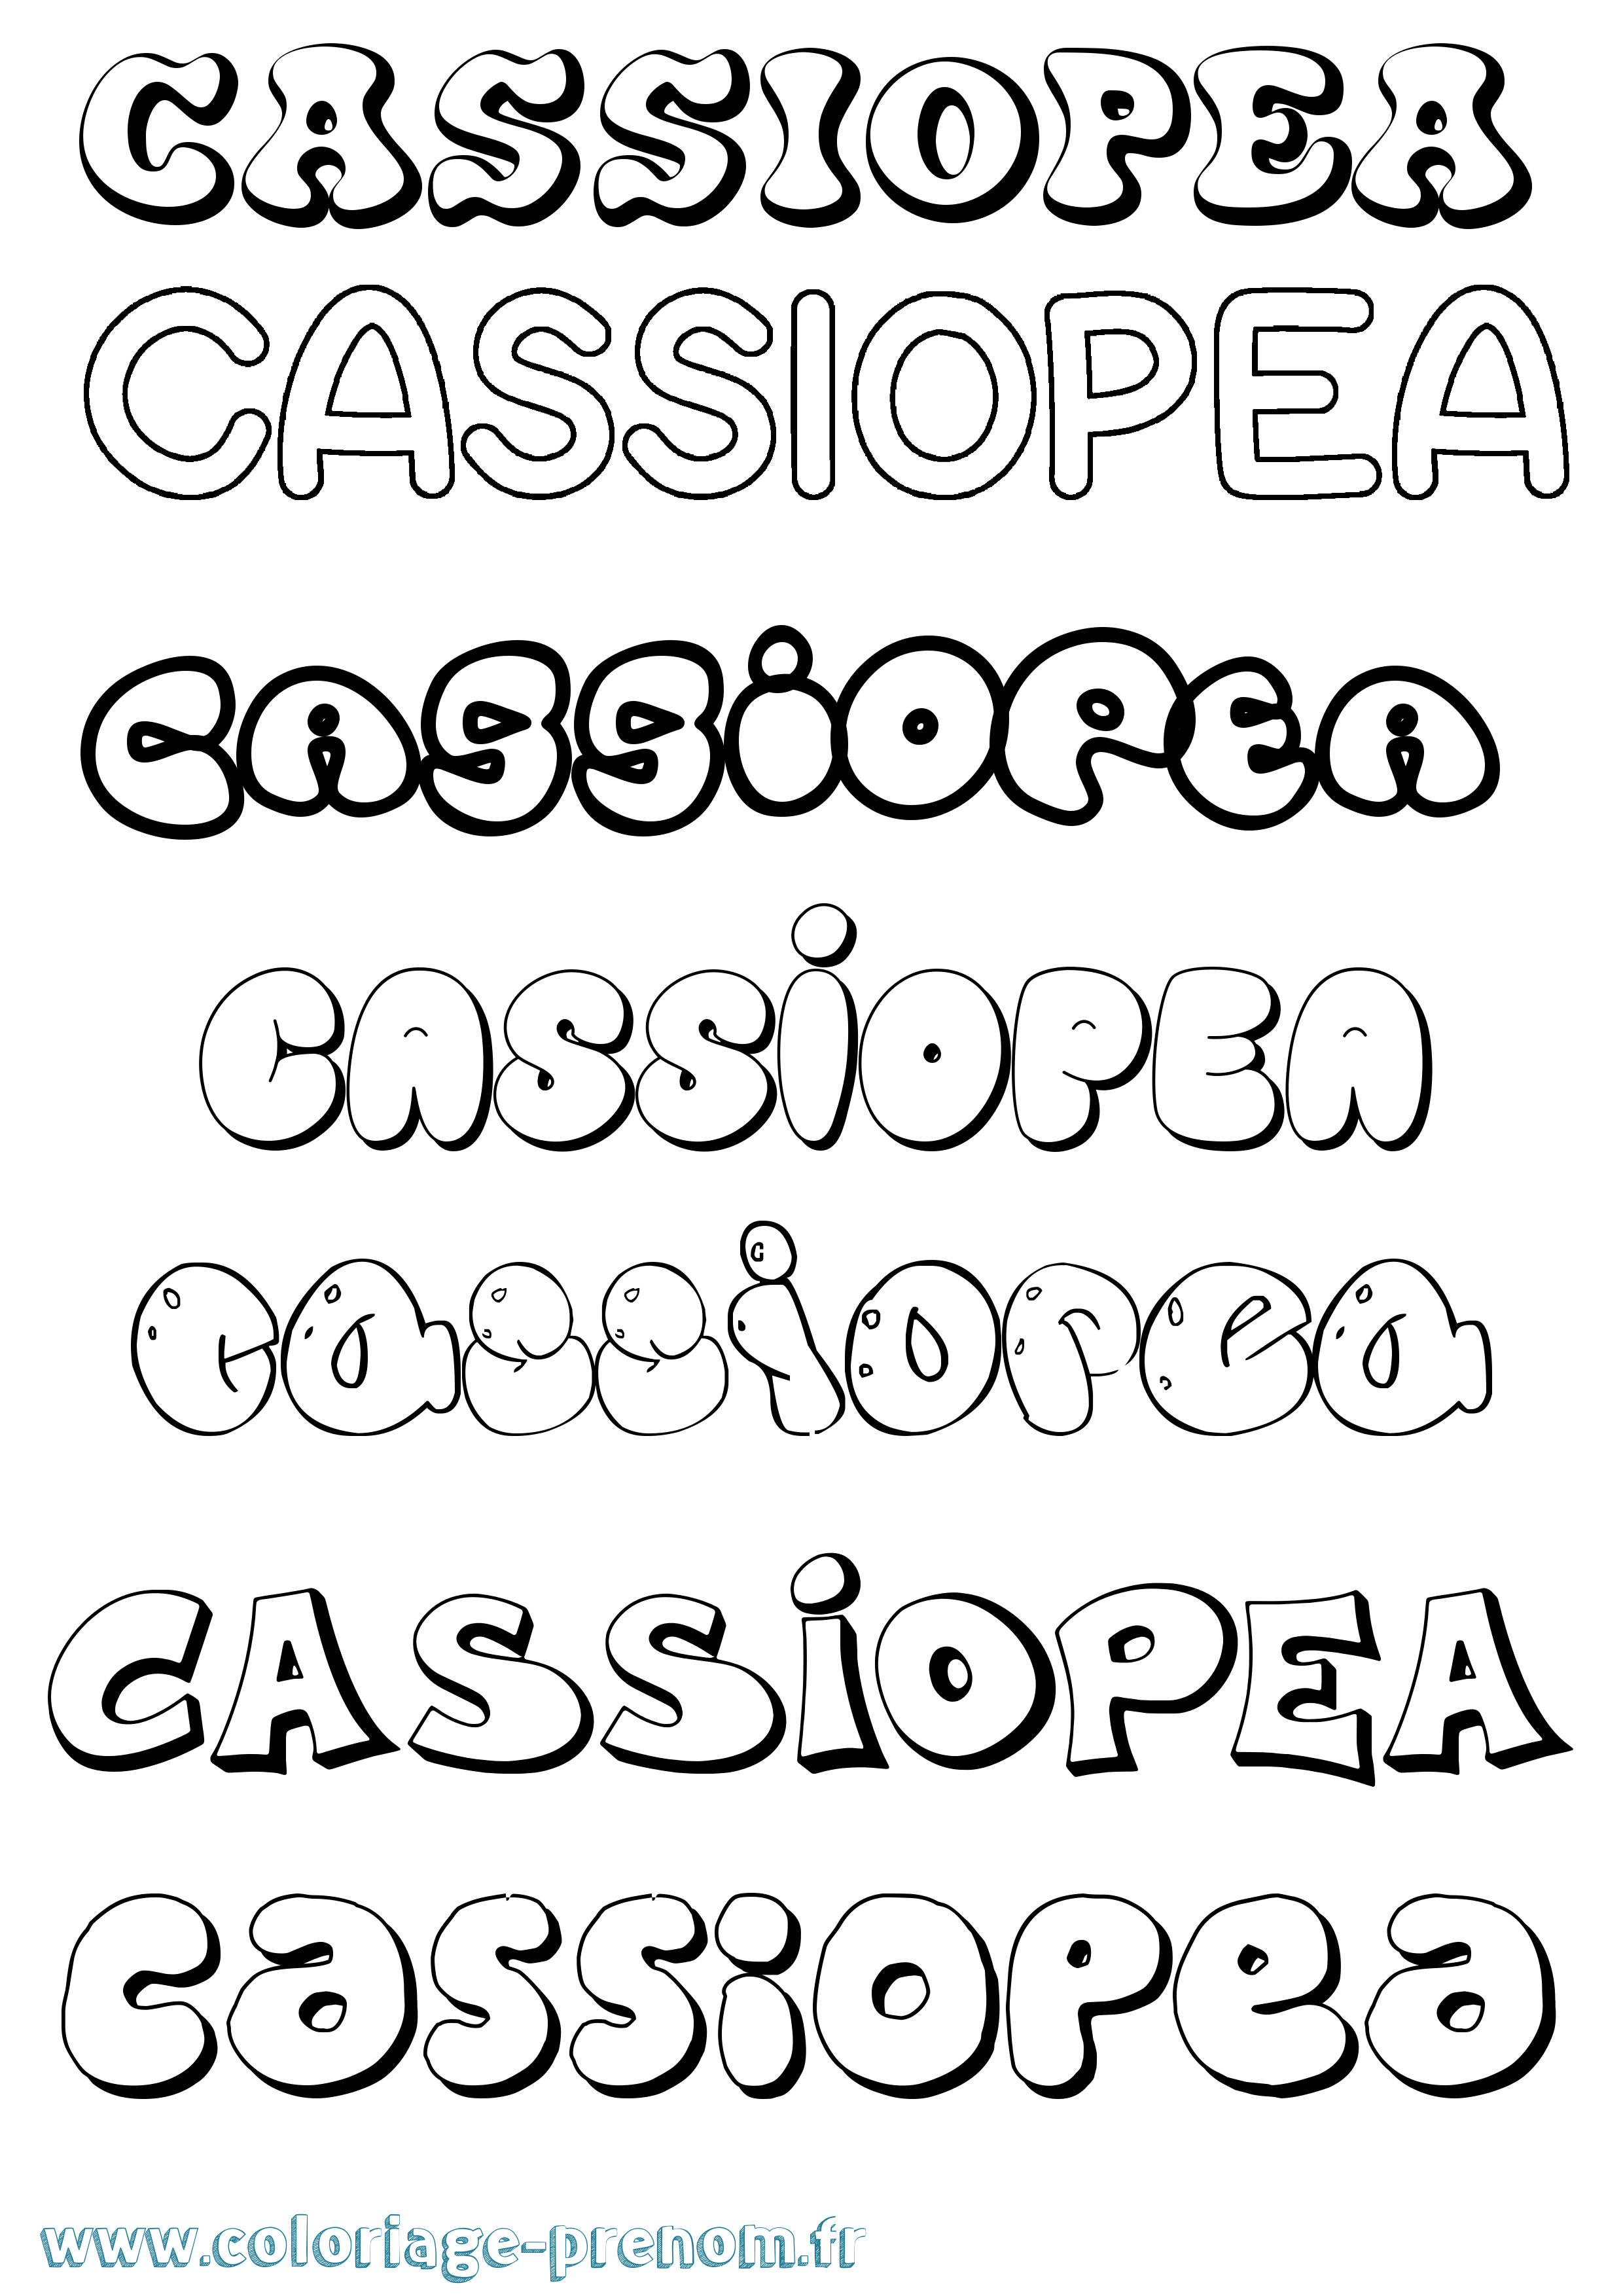 Coloriage prénom Cassiopea Bubble